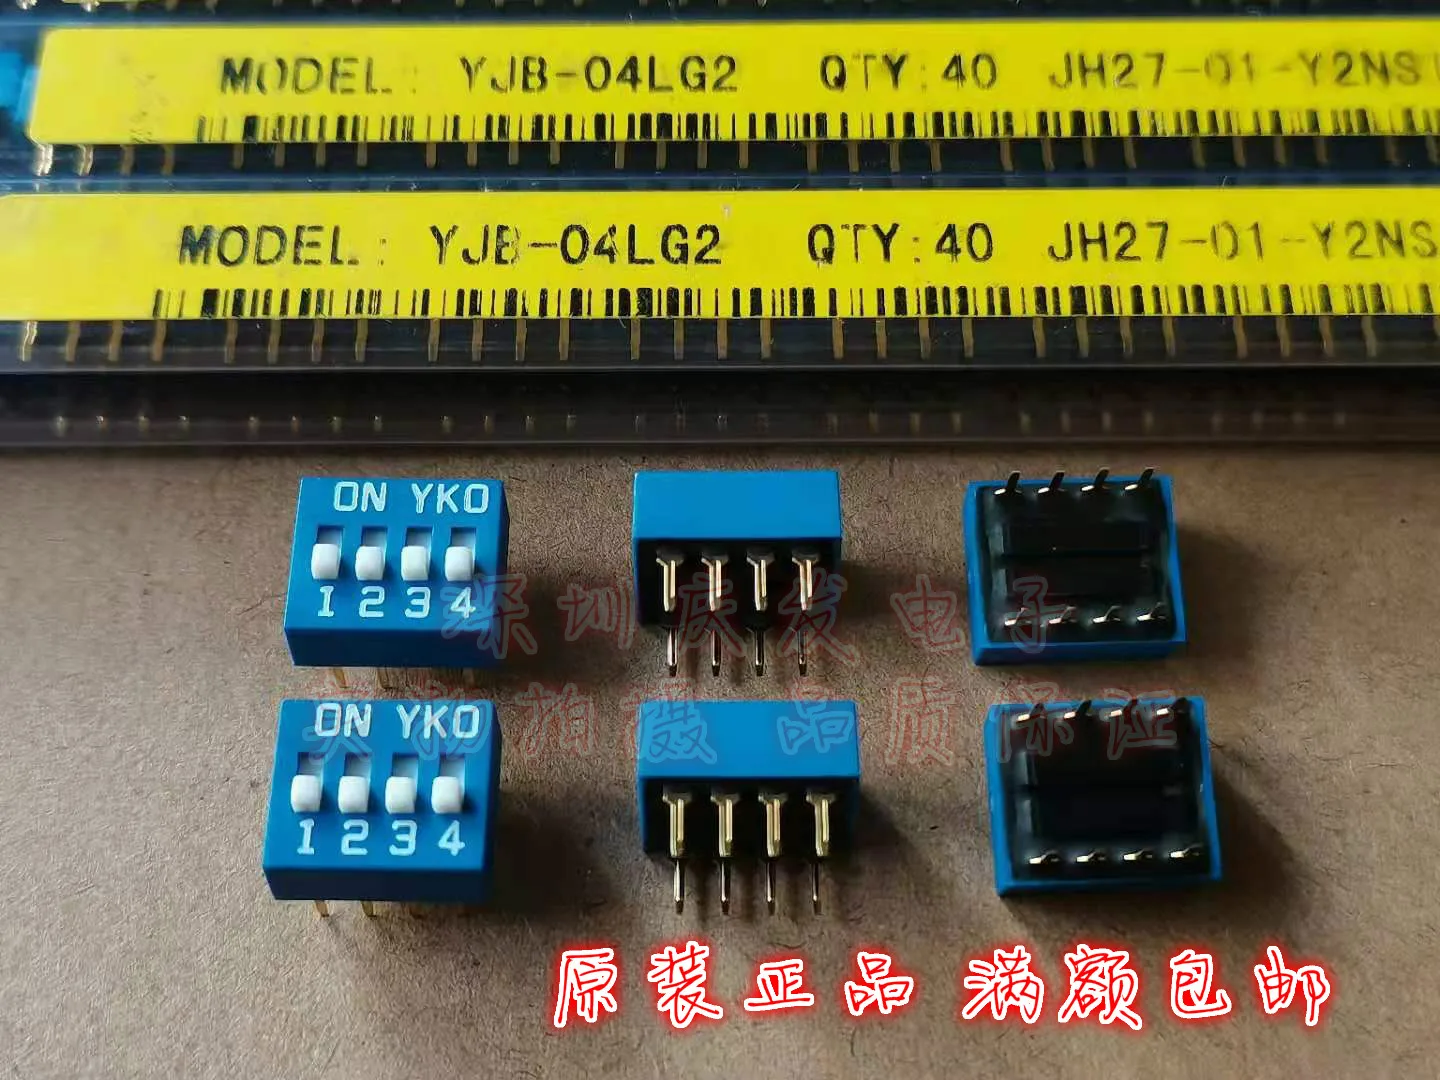 Оригинальный Новый 100% кодовый переключатель YJB-04 с плоским набором кодовый переключатель DIP 4-битный шаг 4P 2,54 мм синие позолоченные ножки